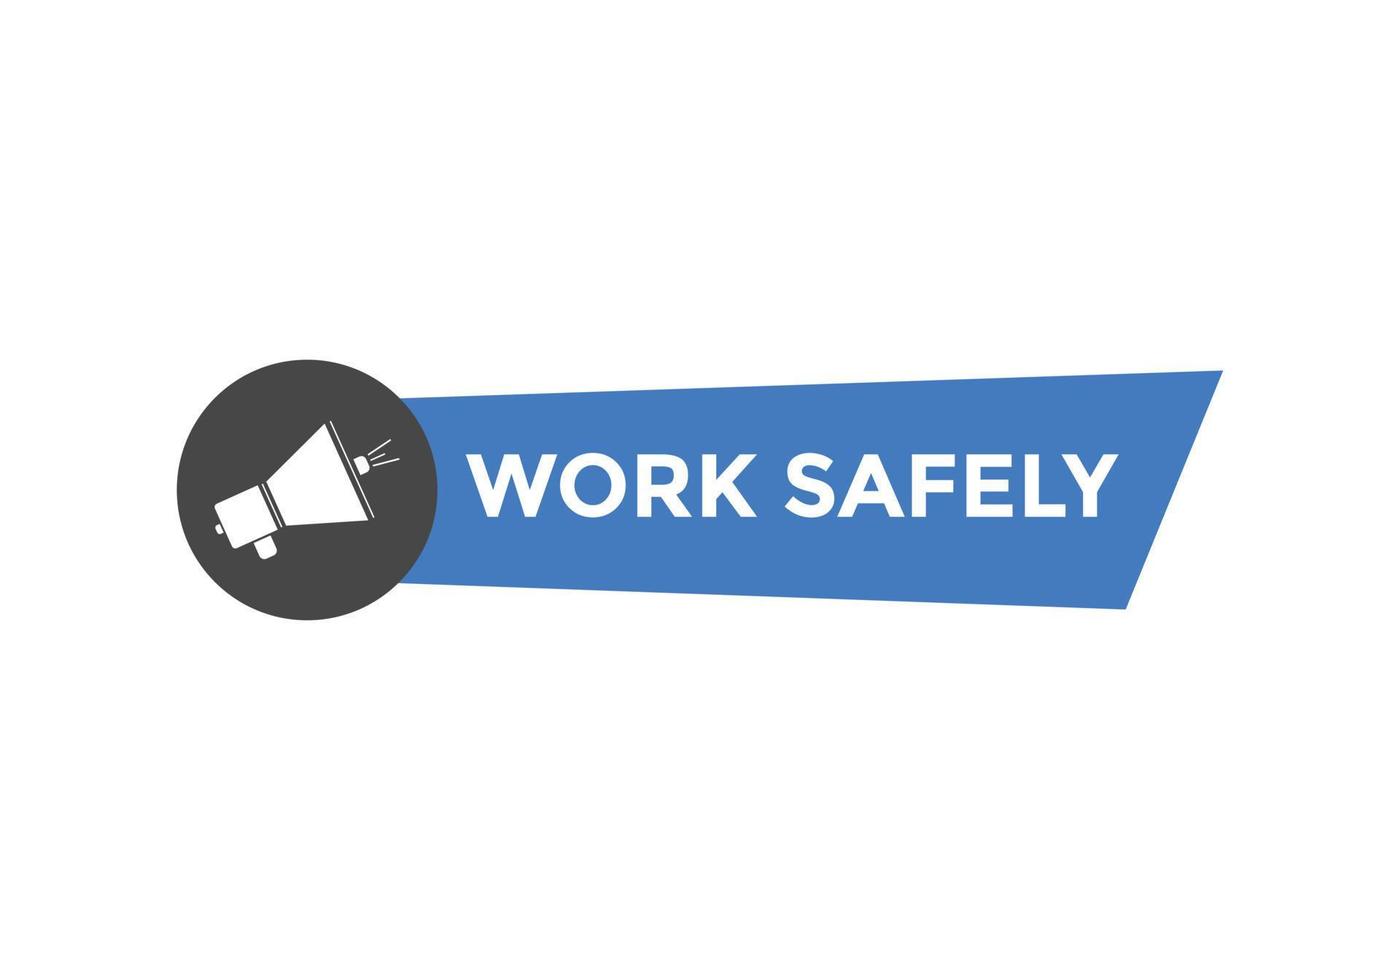 bouton de texte de sécurité au travail. bulle. bannière web colorée de sécurité au travail. illustration vectorielle vecteur